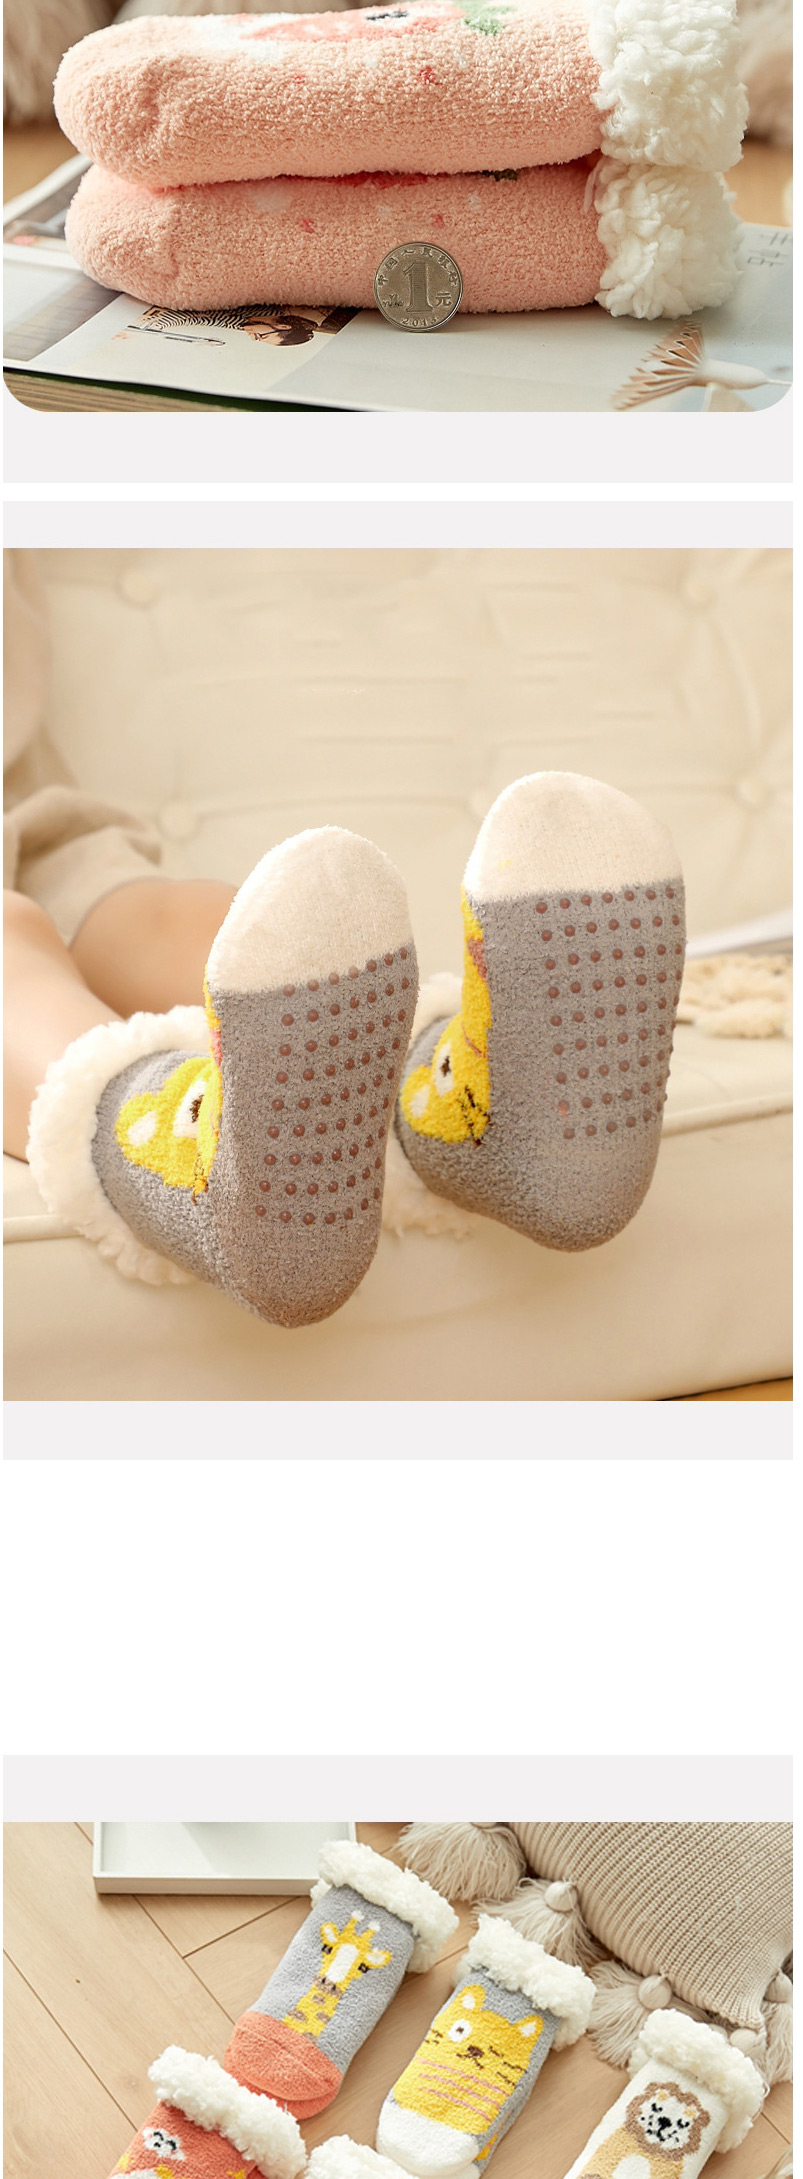 Fashion Double Elk Christmas Thick Printed Baby Non-slip Floor Socks,Fashion Socks